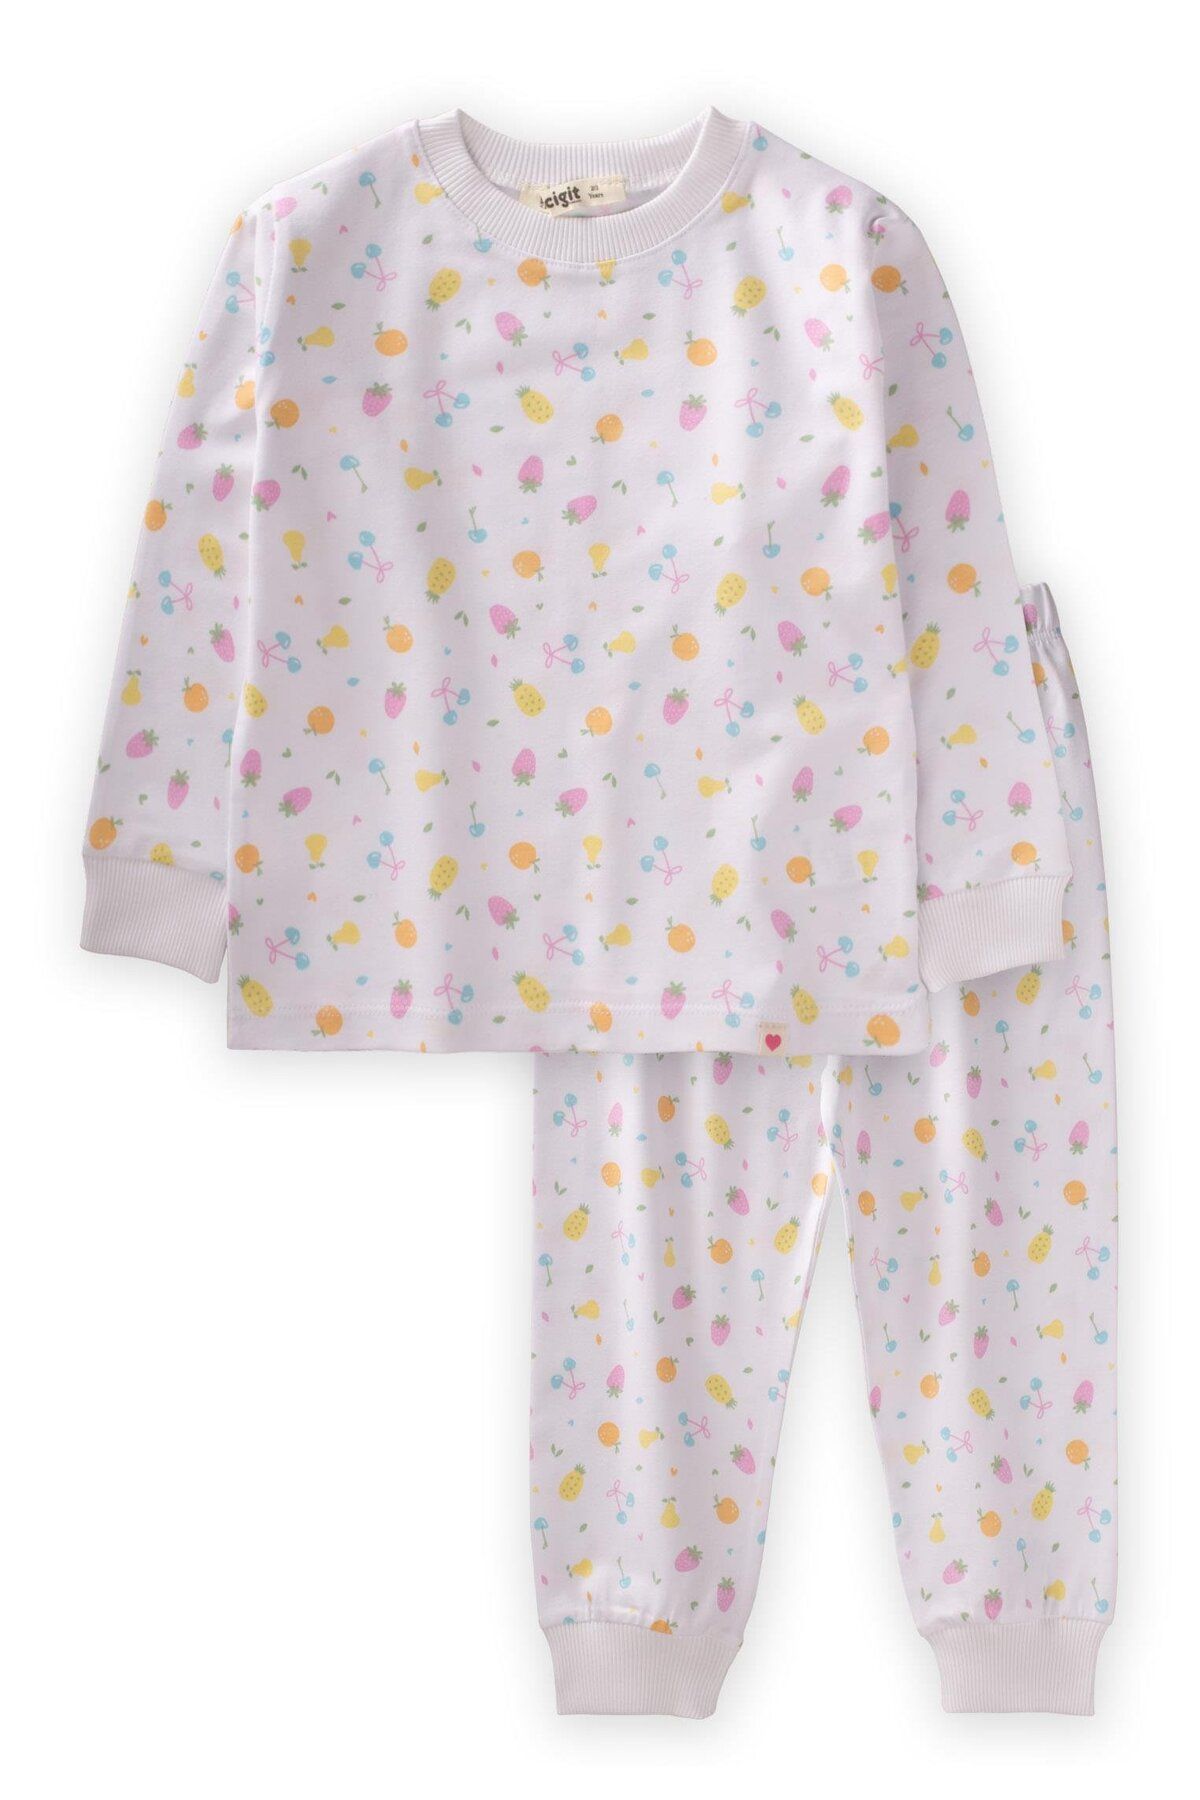 Cigit Desenli Pijama Takım 1-5 Yaş Meyve Baskılı